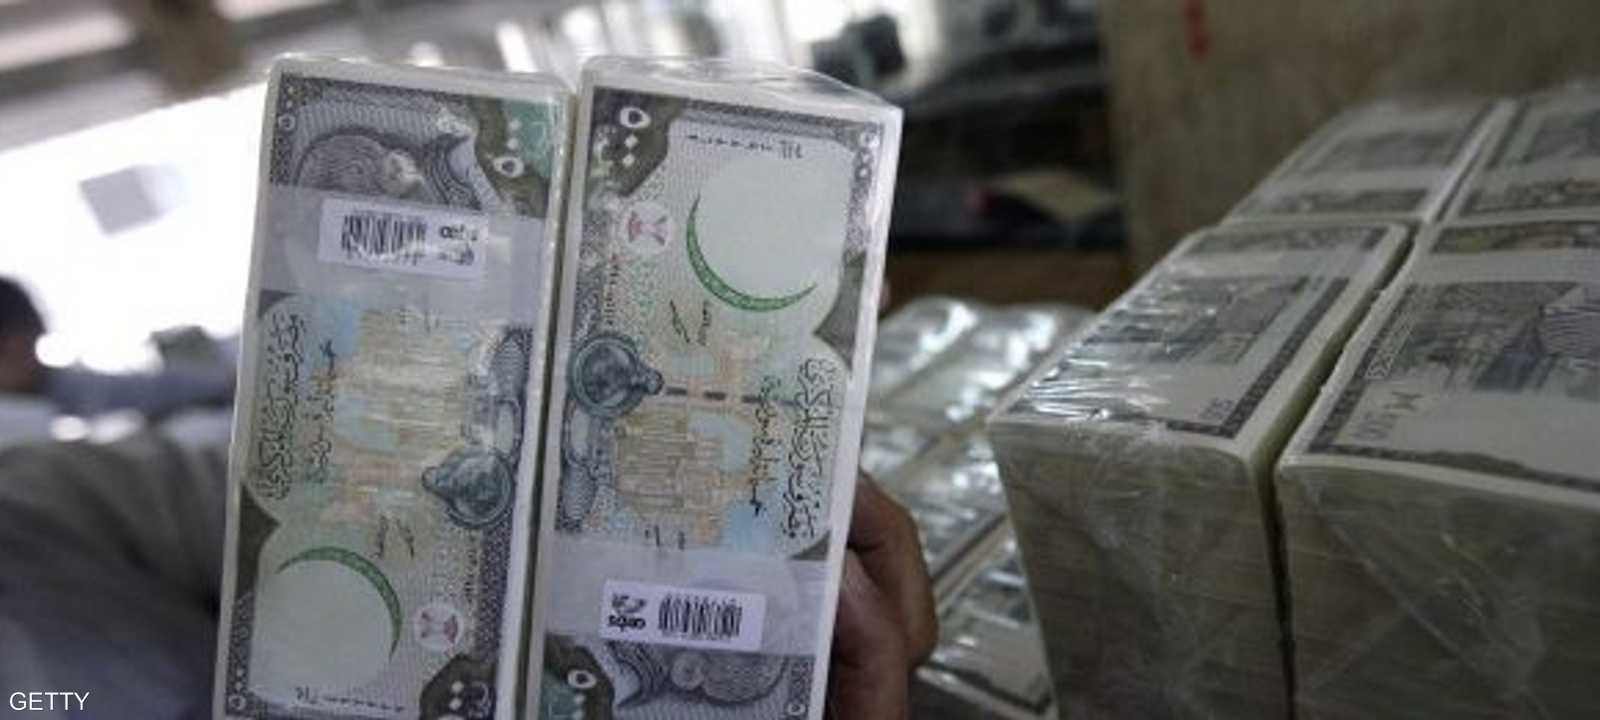 قبل اندلاع النزاع، كان الدولار يساوي 48 ليرة سورية